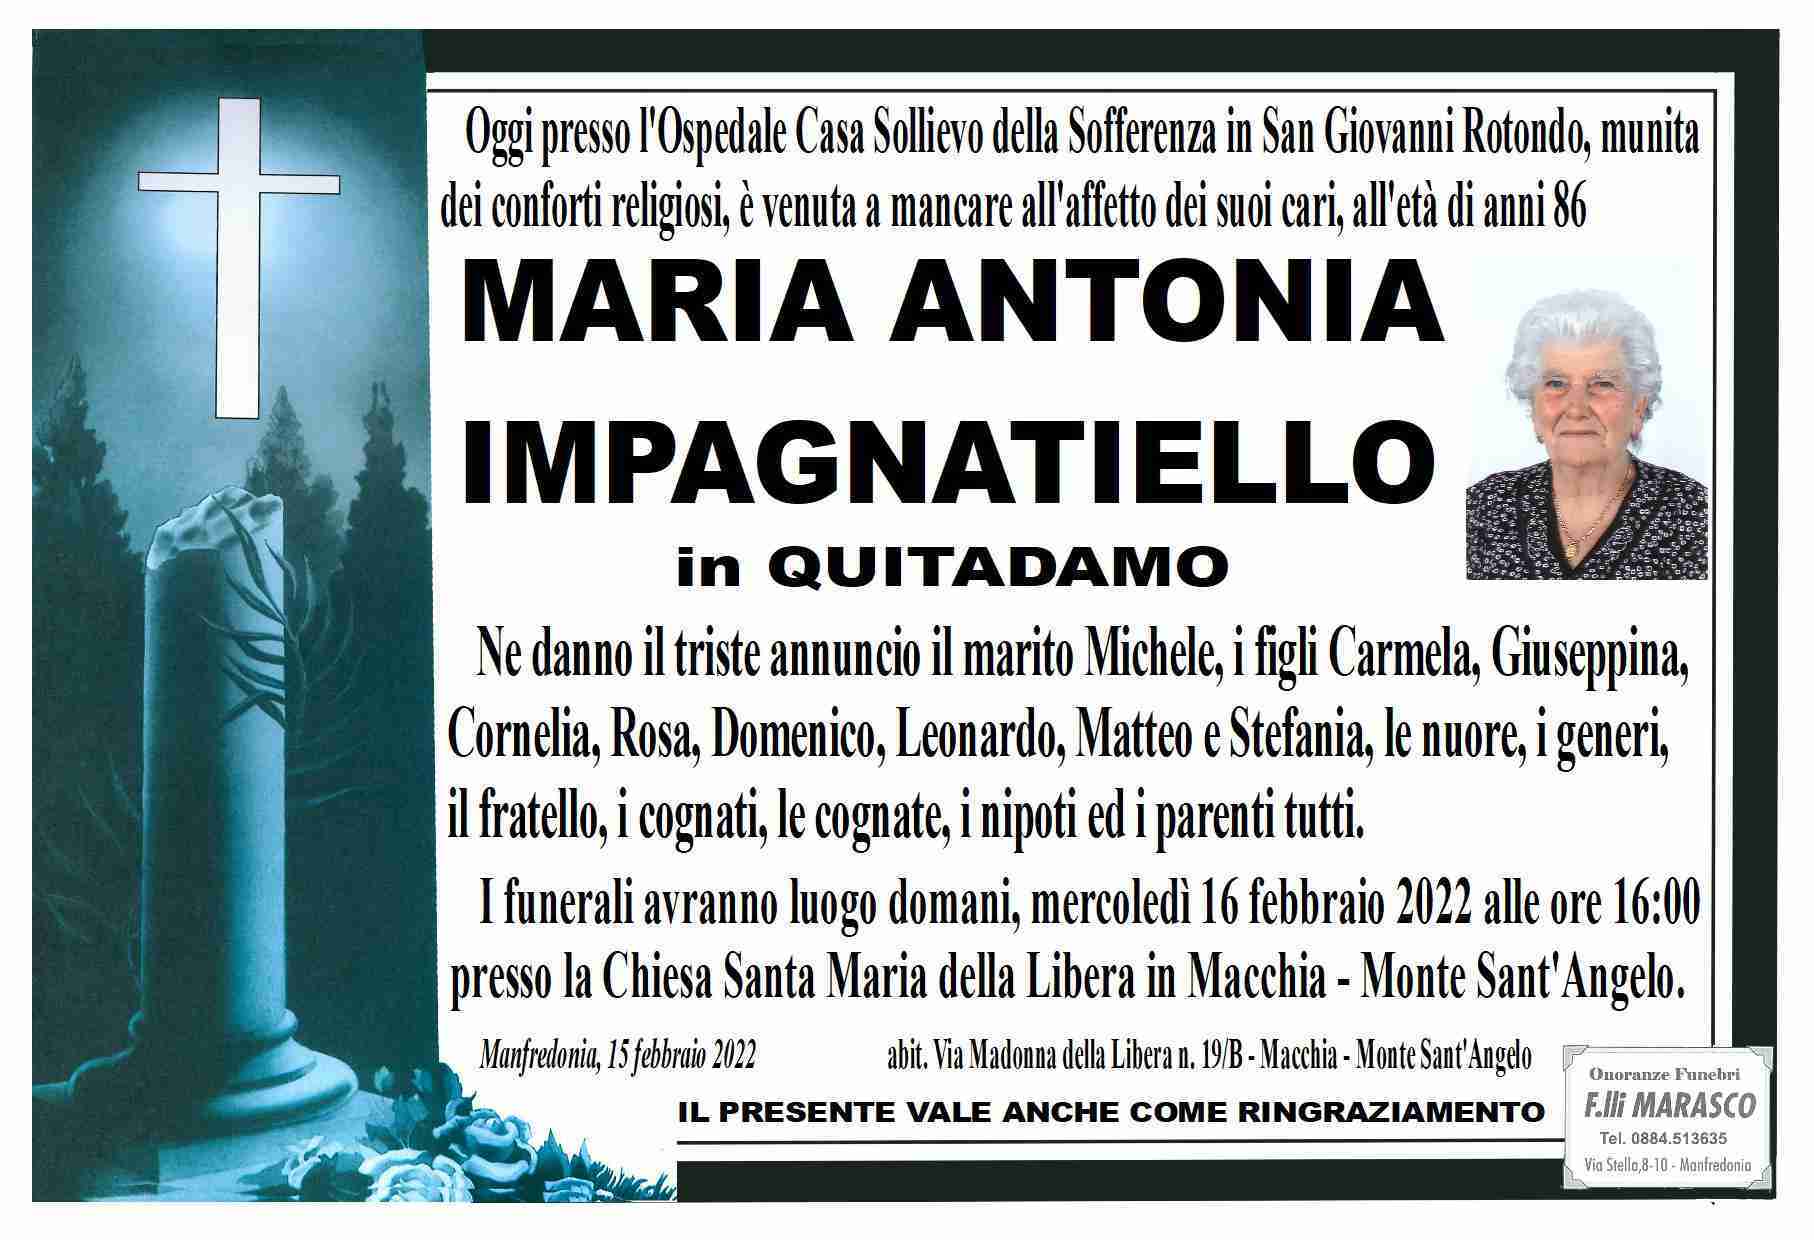 Maria Antonia Impagnatiello